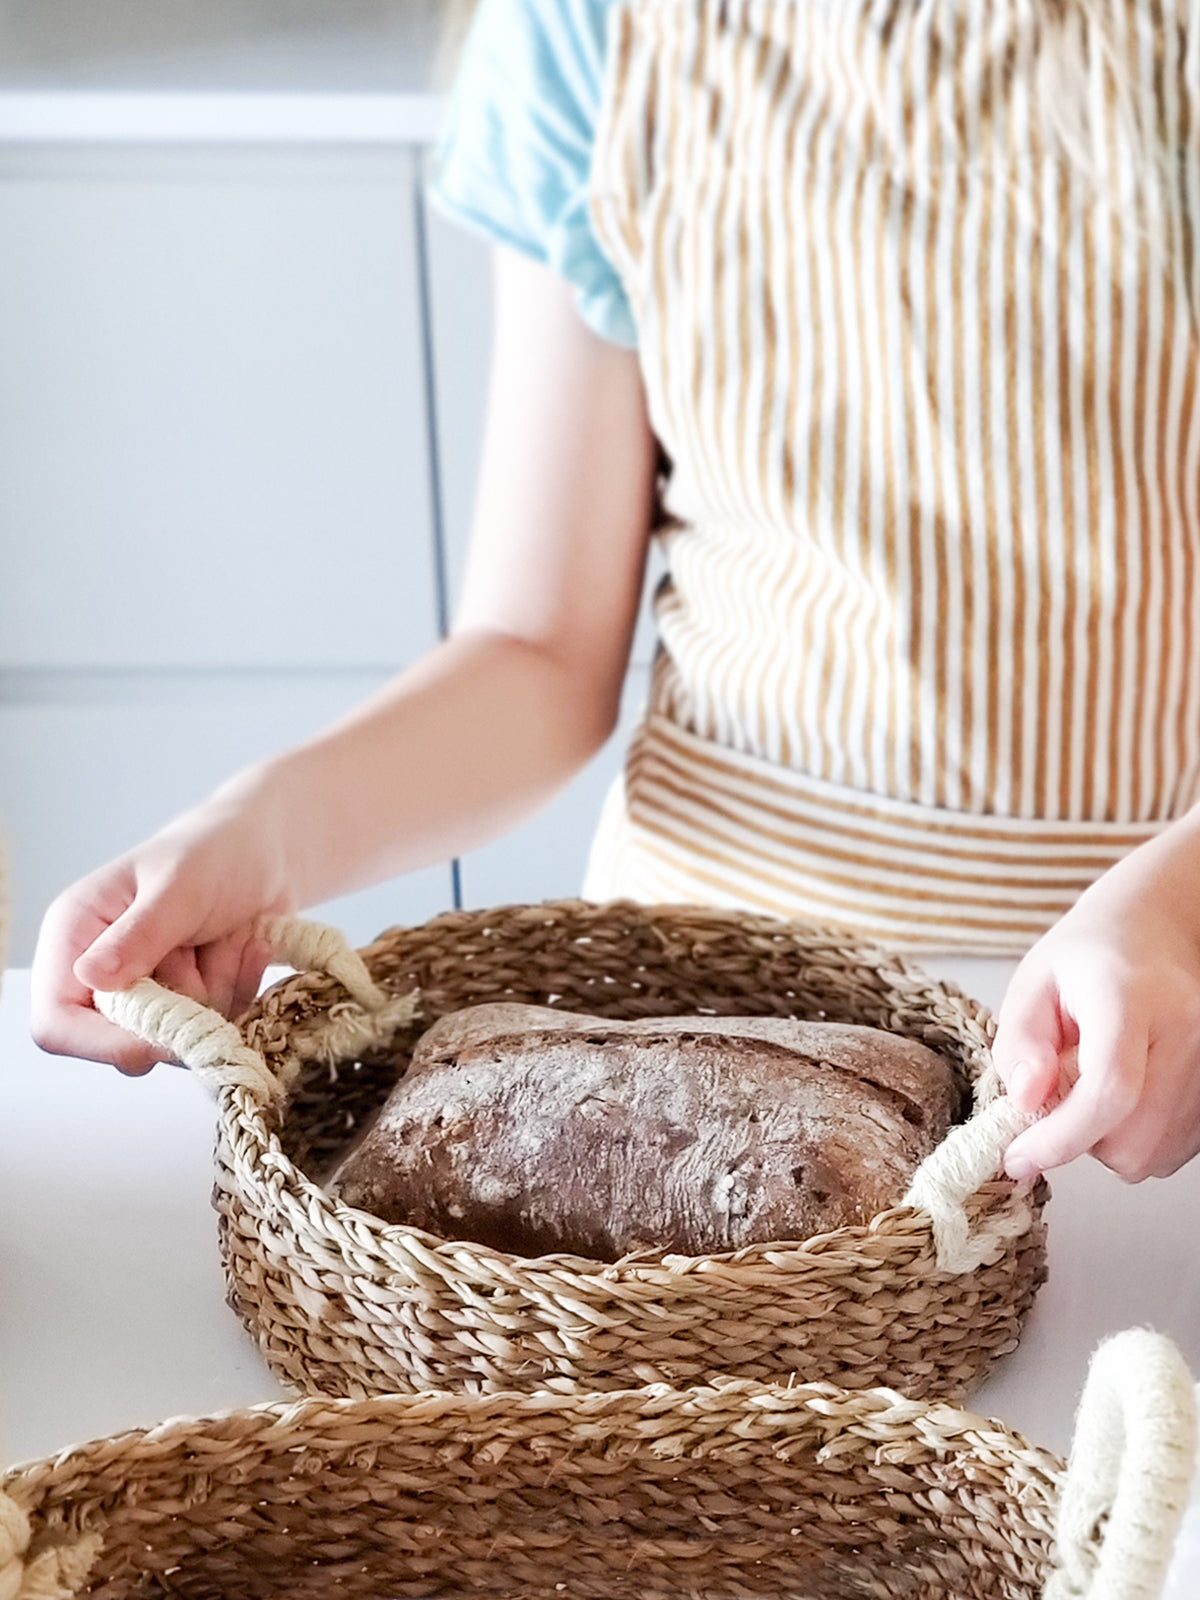 
                  
                    Savar Round Bread Basket by KORISSA
                  
                